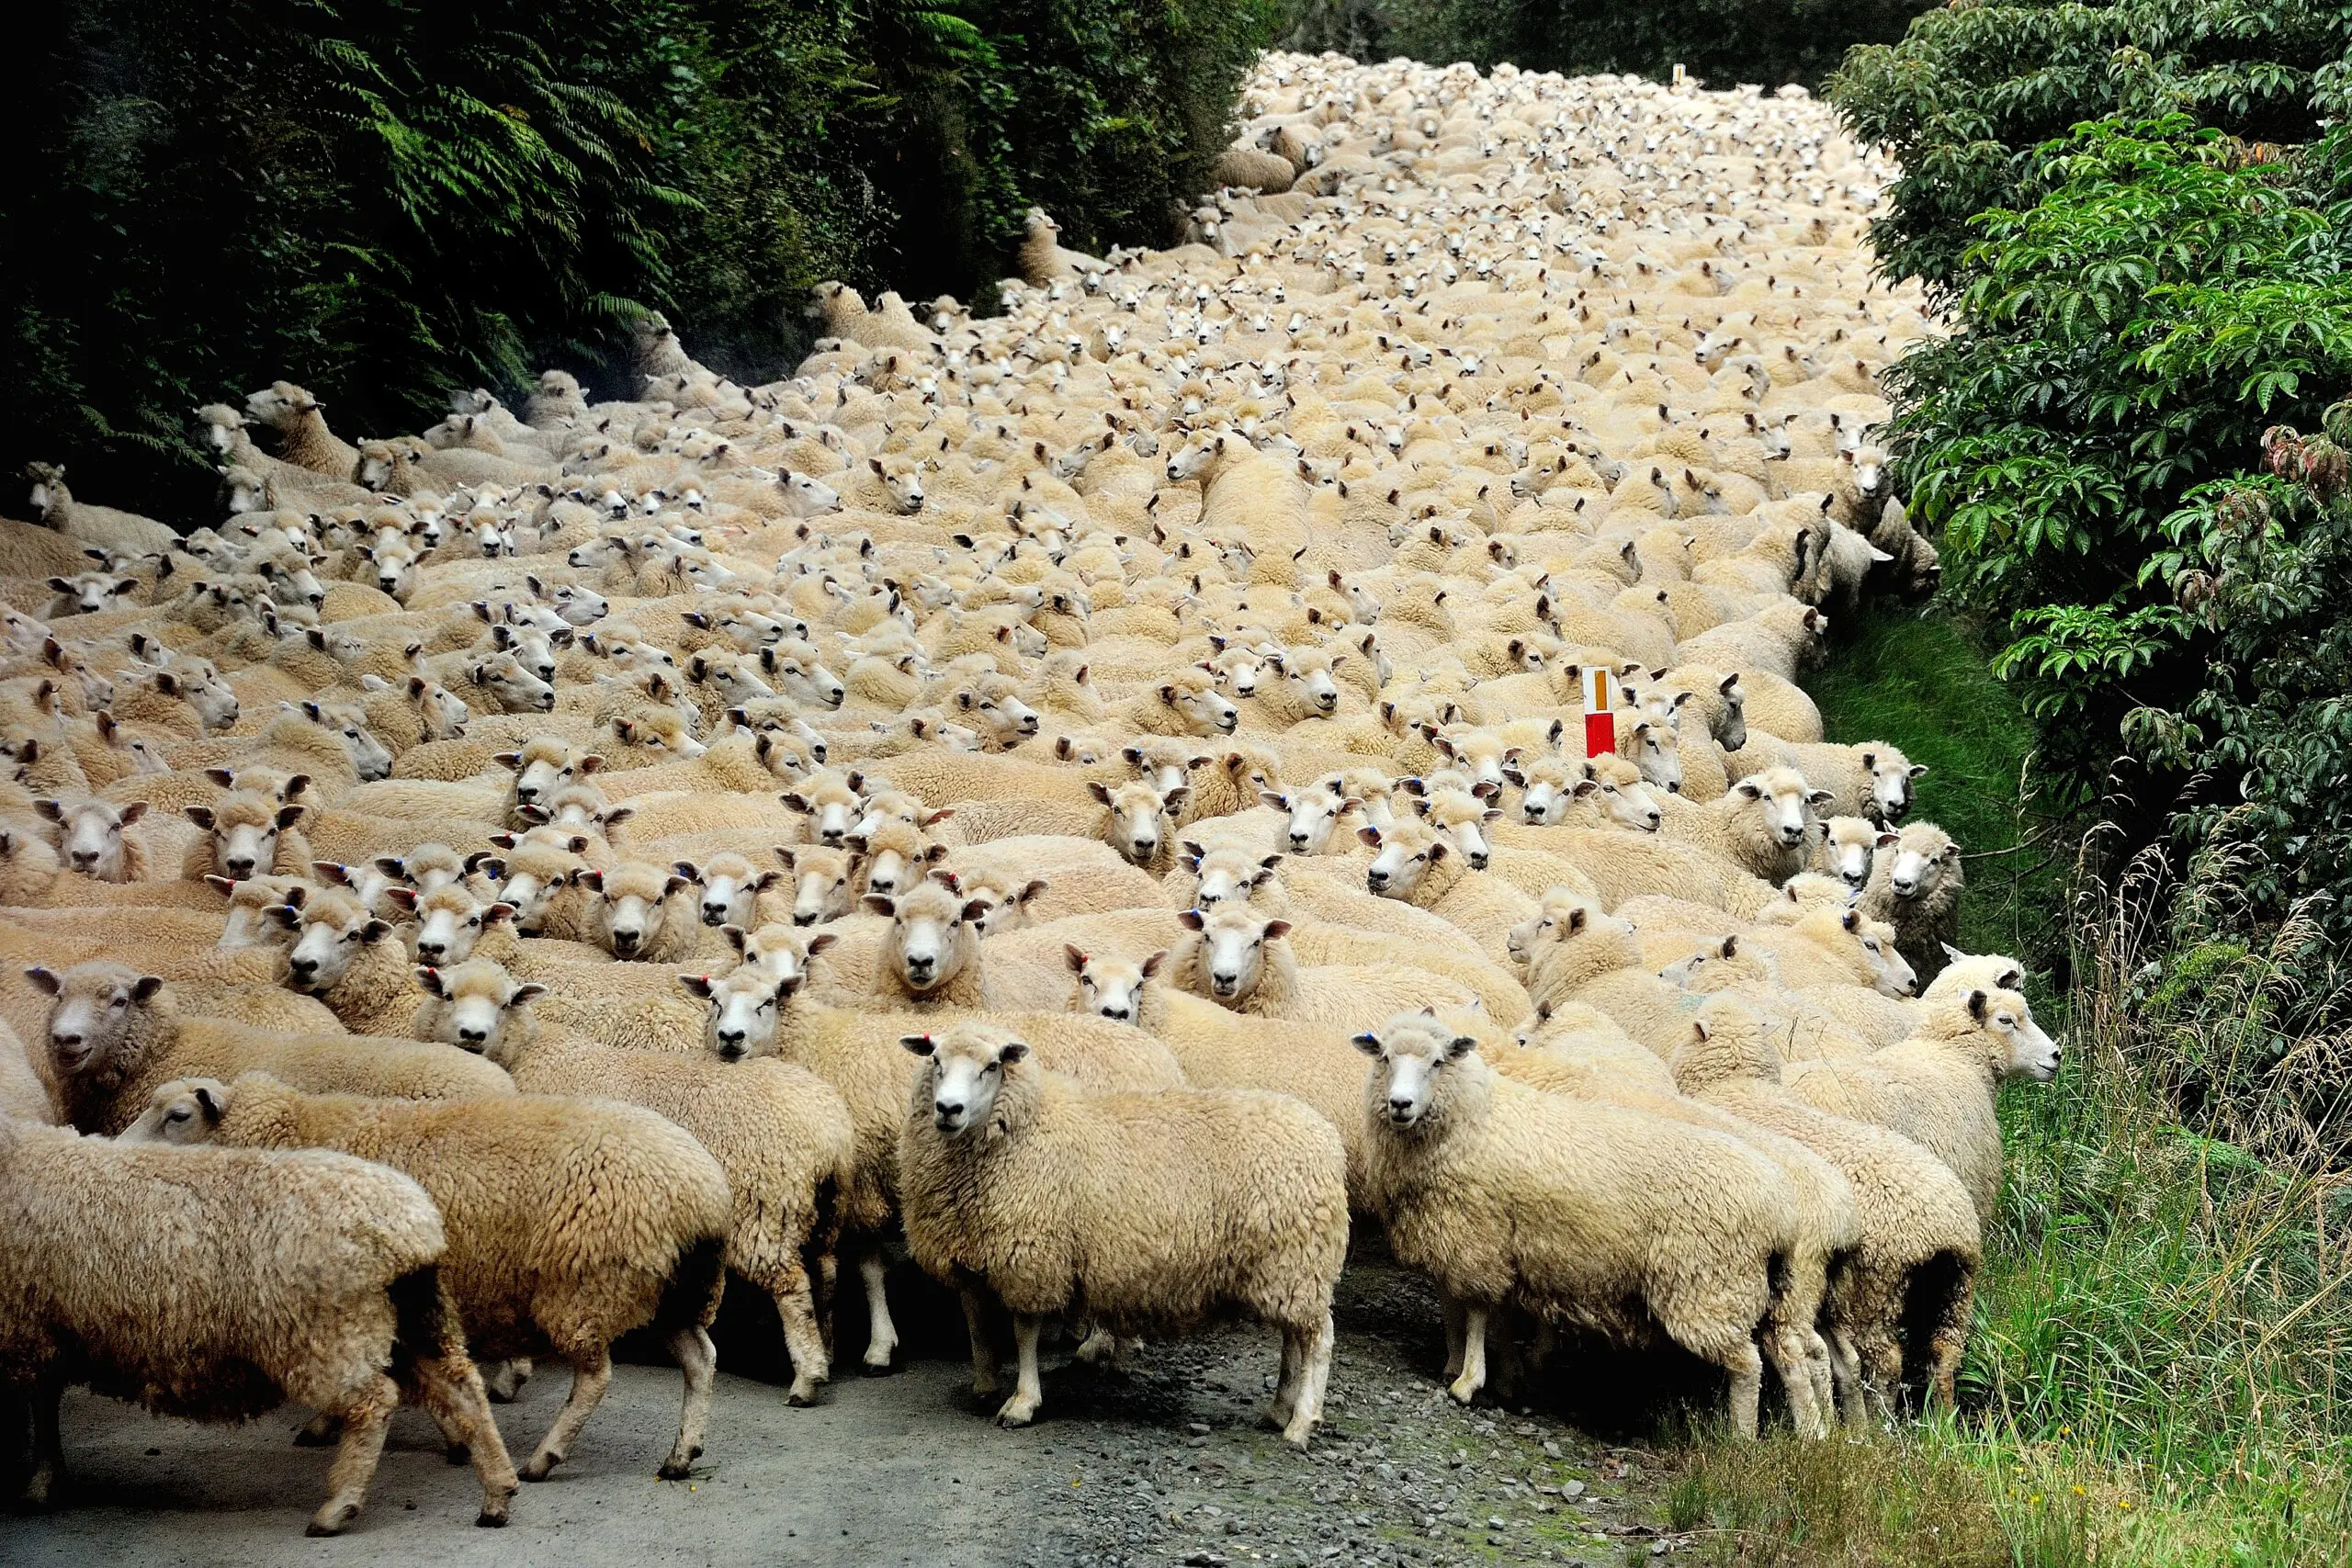 Wandbild (5696) New Zealand traffic jam by Yair Tzur,1x.com präsentiert: Tiere,Natur,Landschaften,Wege,Haustiere